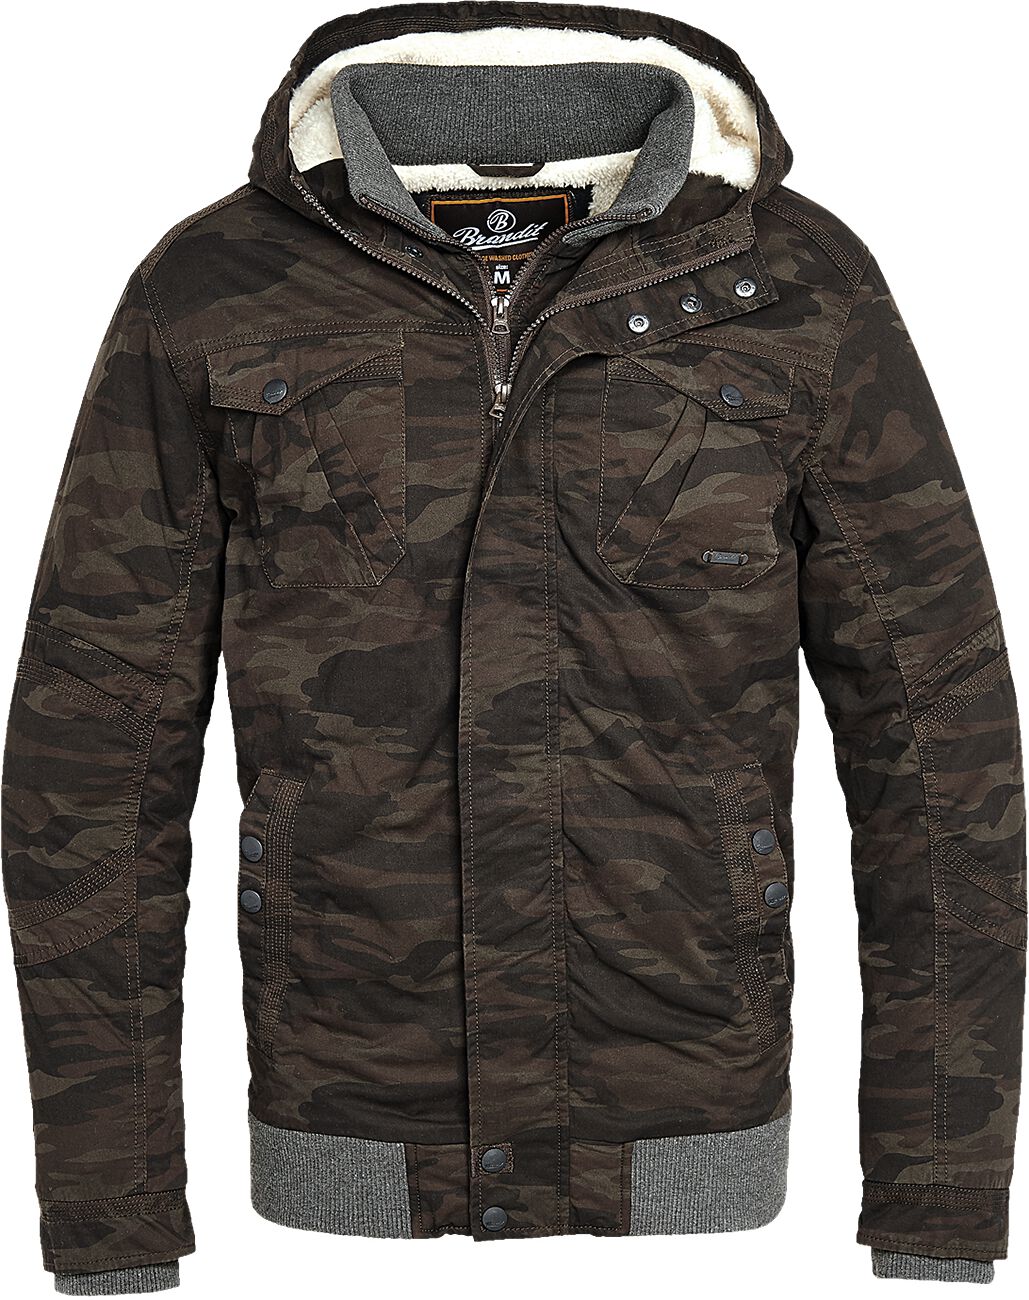 Brandit - Camouflage/Flecktarn Winterjacke - Parkmont Jacket - S bis 5XL - für Männer - Größe 4XL - camouflage von Brandit